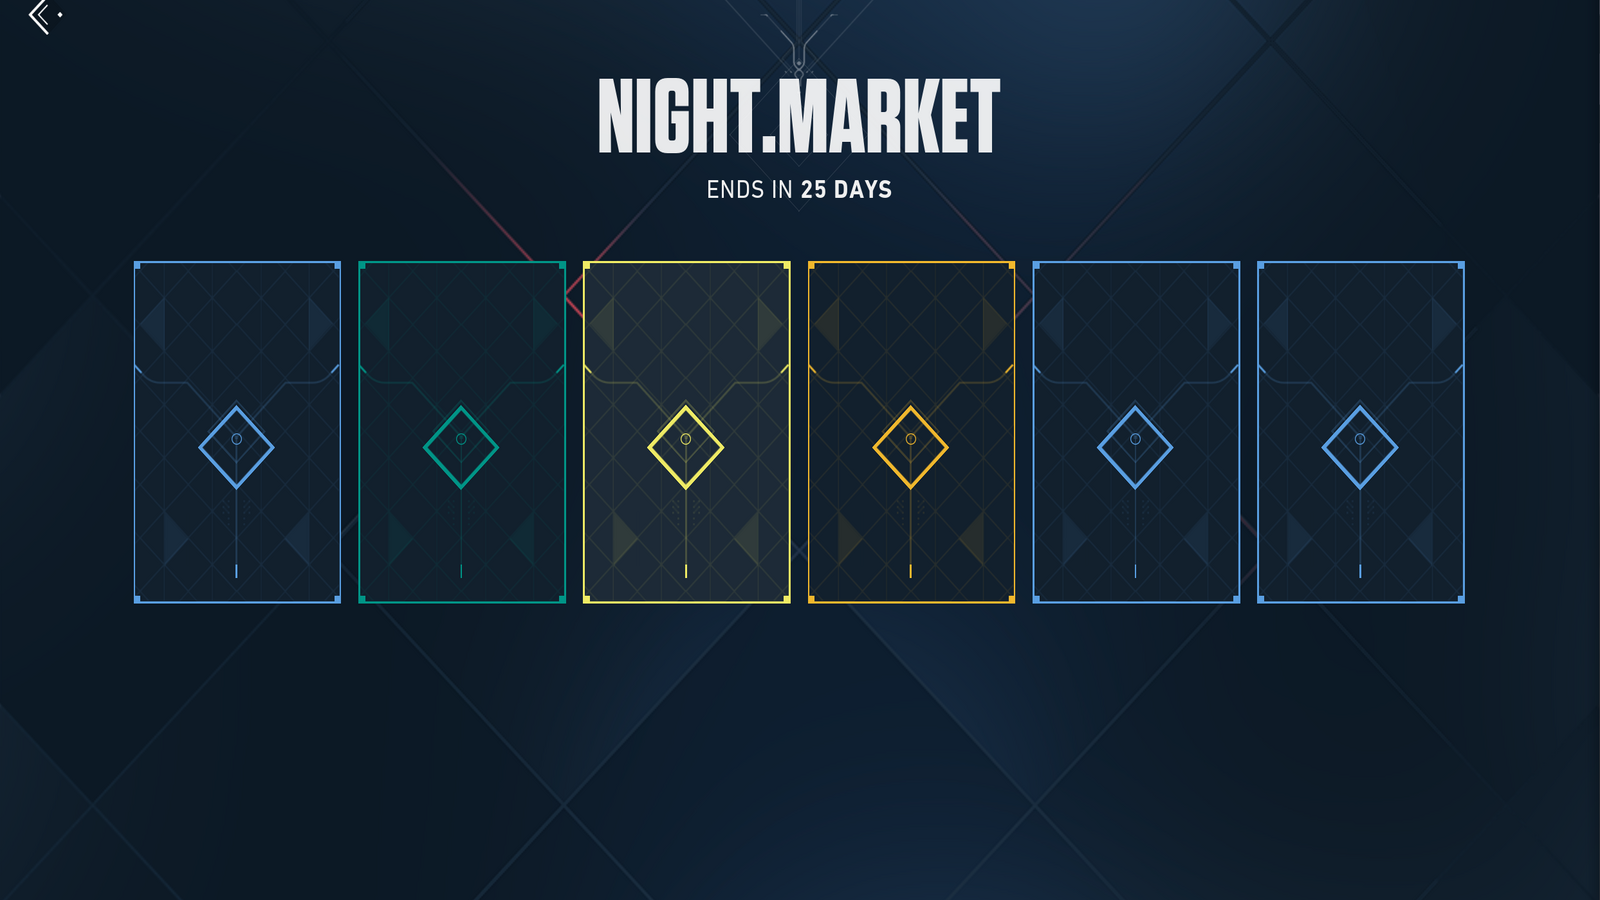 Một ảnh chụp màn hình của một thị trường đêm mới, với mỗi làn da vẫn còn ẩn sau một thẻ tiết lộ